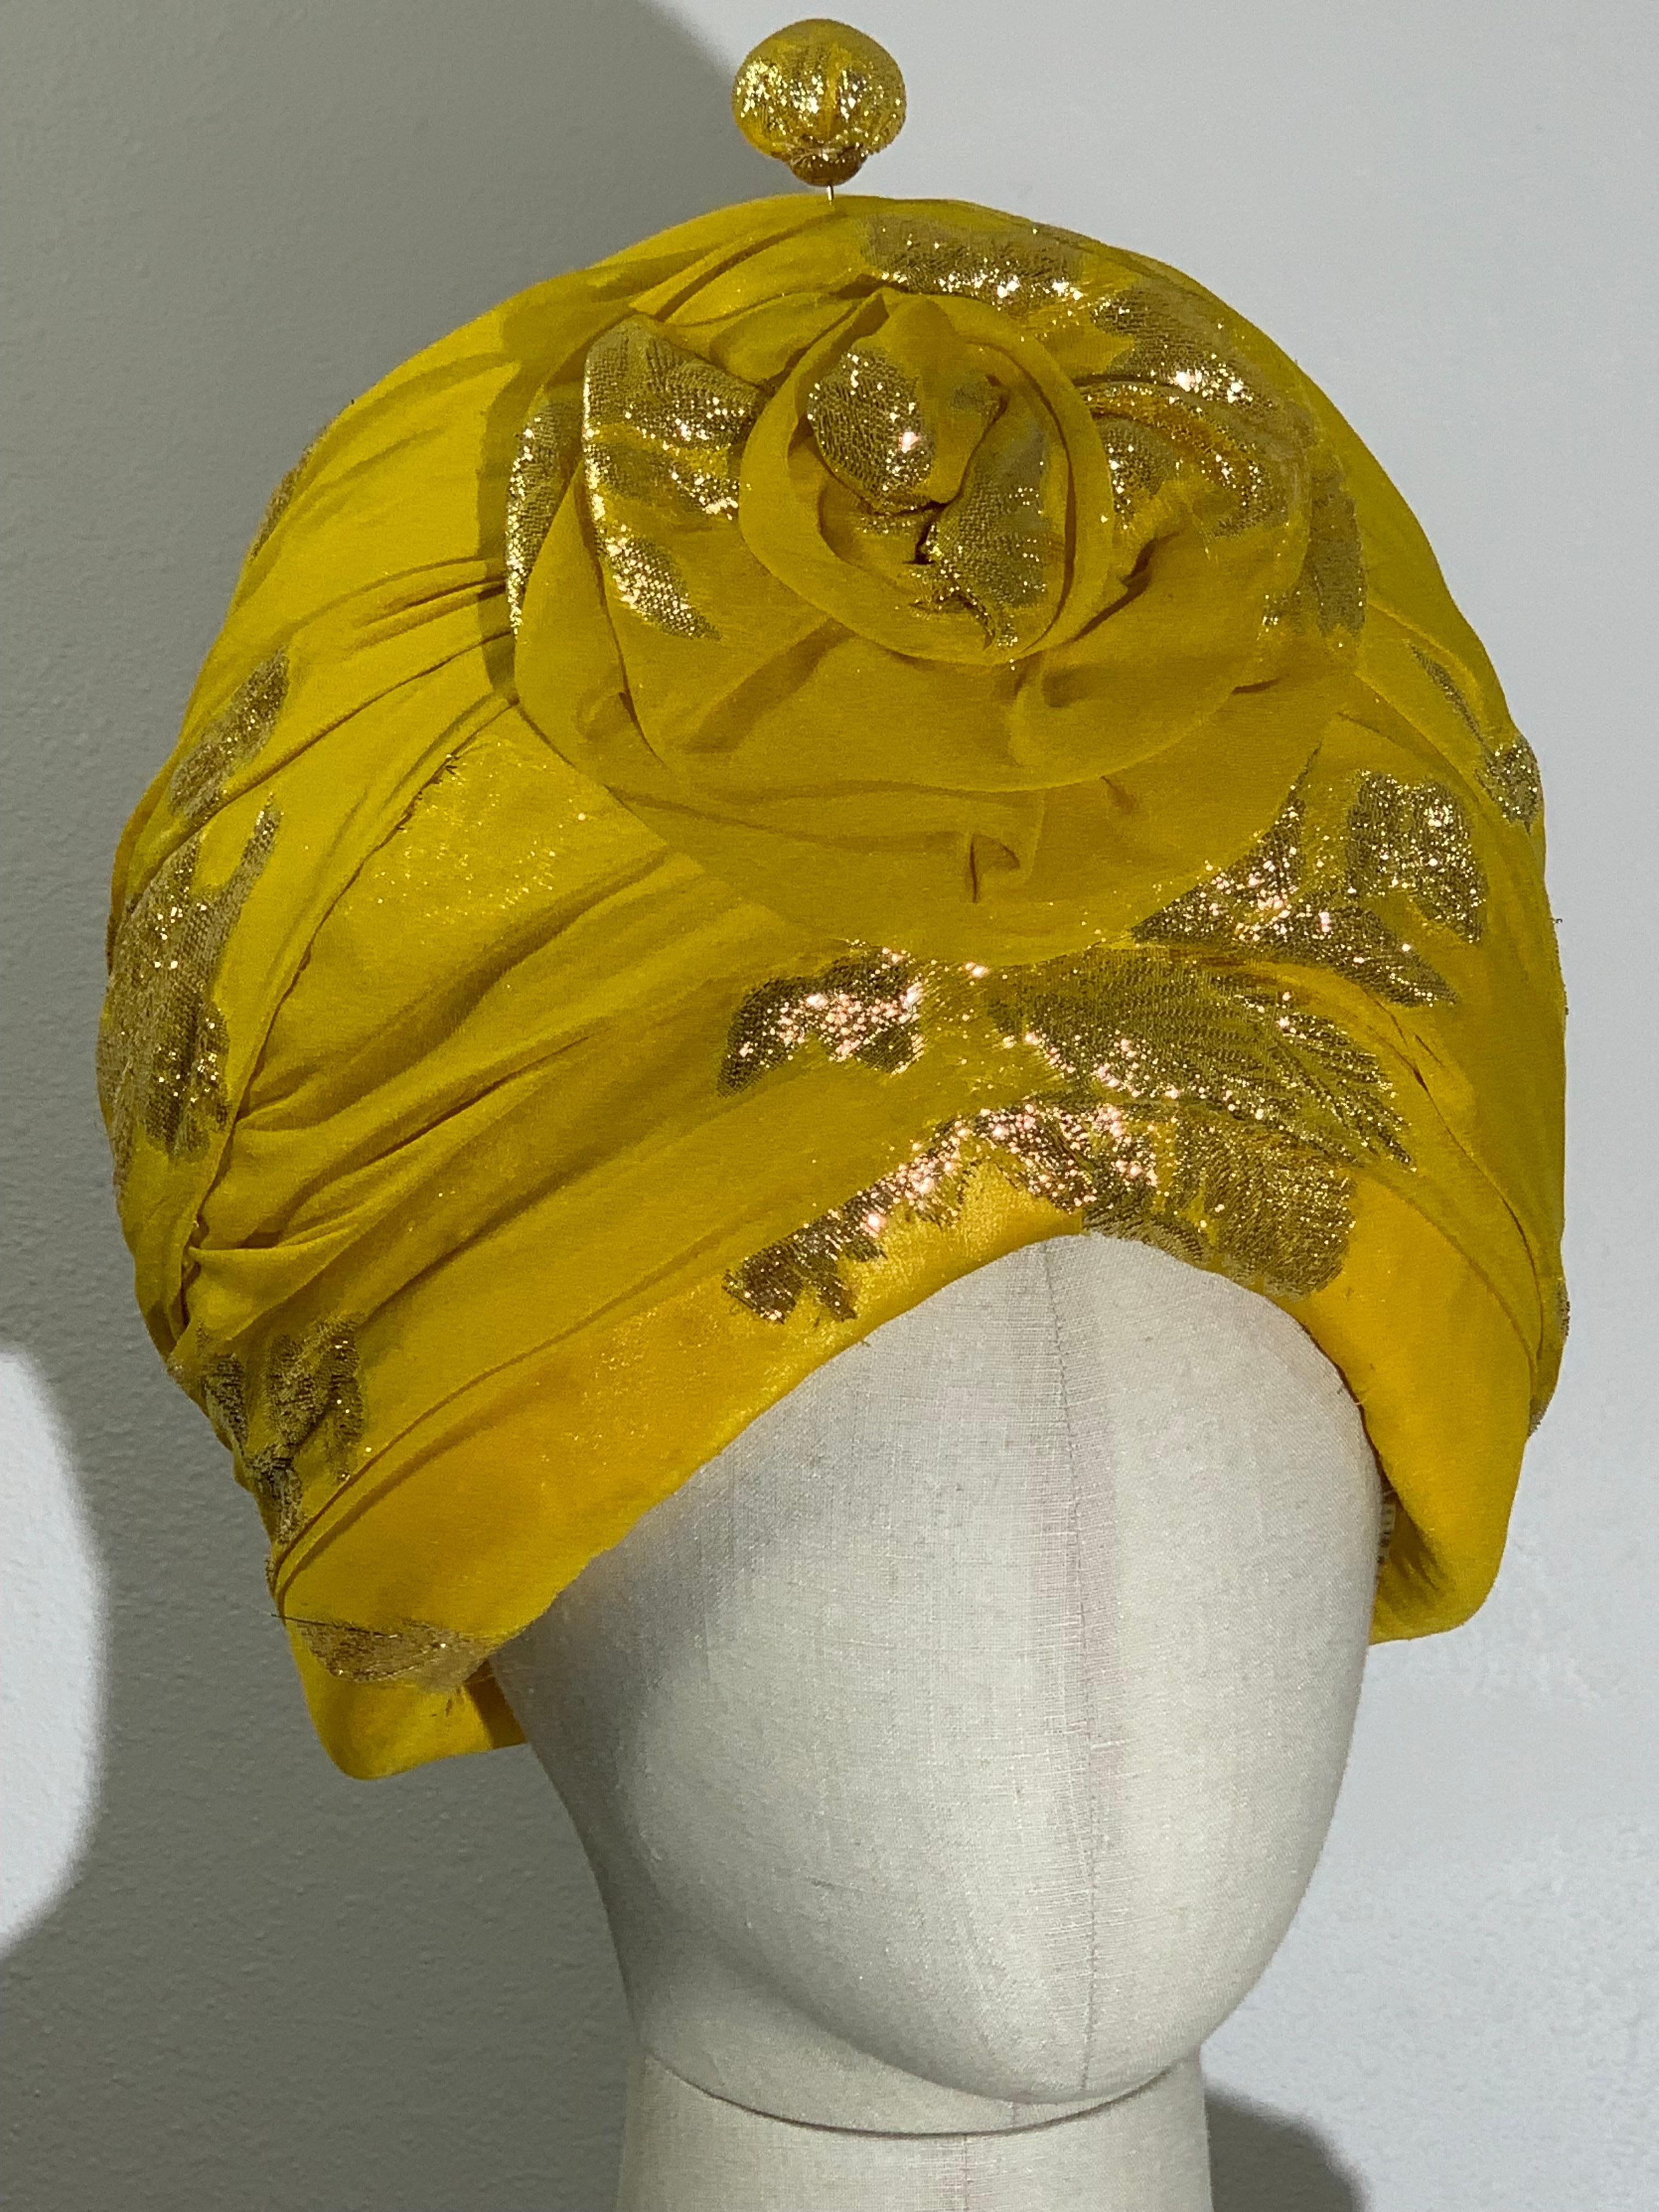 Custom Made Suzanne Couture Millinery Canary Yellow Silk Chiffon Lame Floral Patterned Tufted und gepolsterte Turban w Blume und koordinierende große Hutnadel.  Gefüttert mit gelbem Satin. Innenkämme zur Sicherung.  US Größe 6 3/8.

In unserem 1Dibs